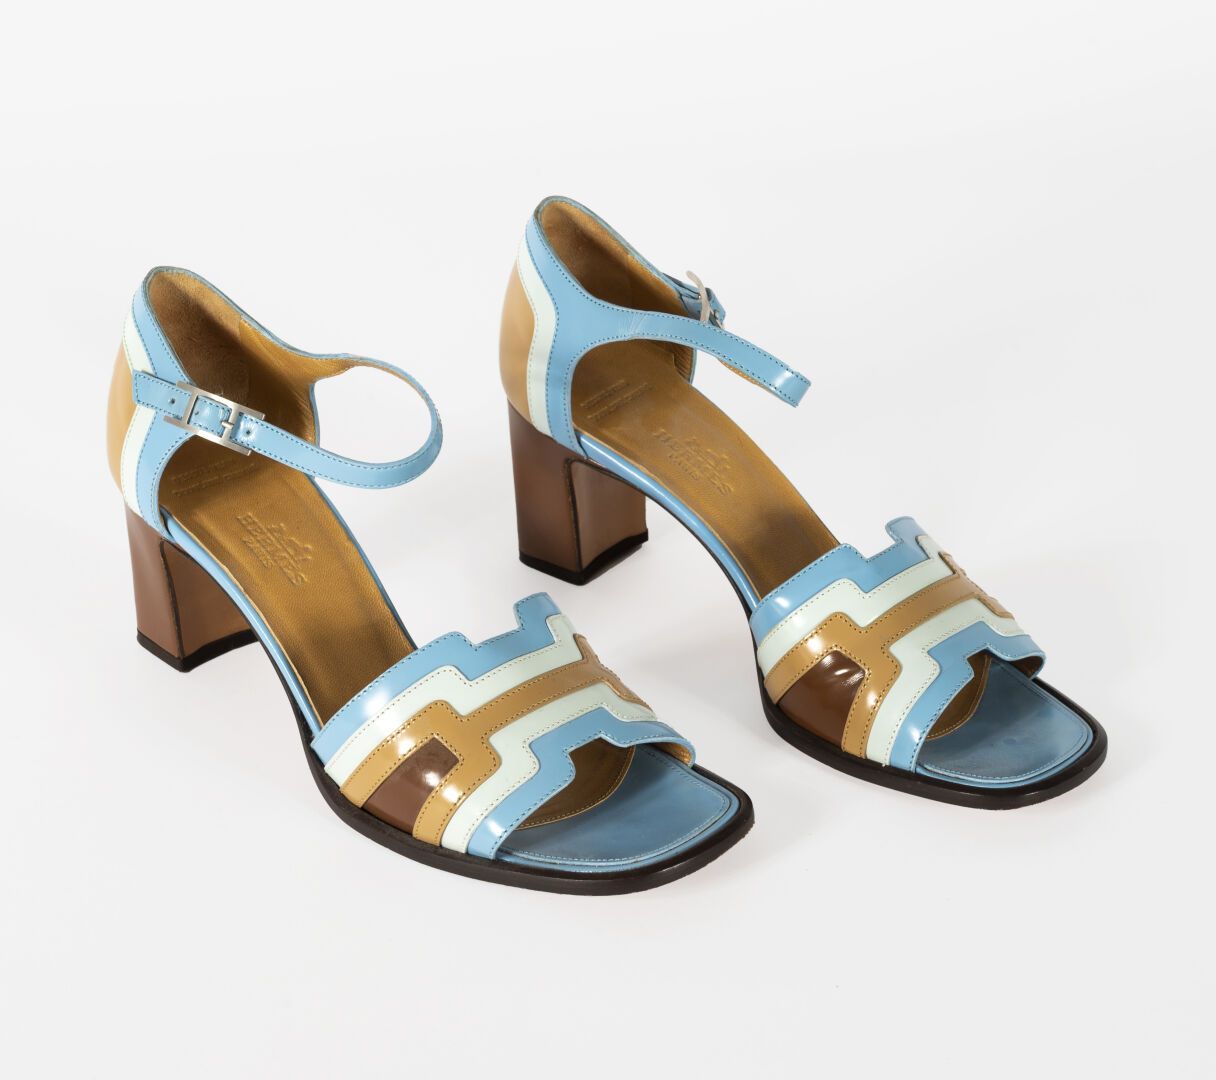 HERMES Hermès-Paar Sandalen aus blauem und beigem Lackleder.

Größe 37,5